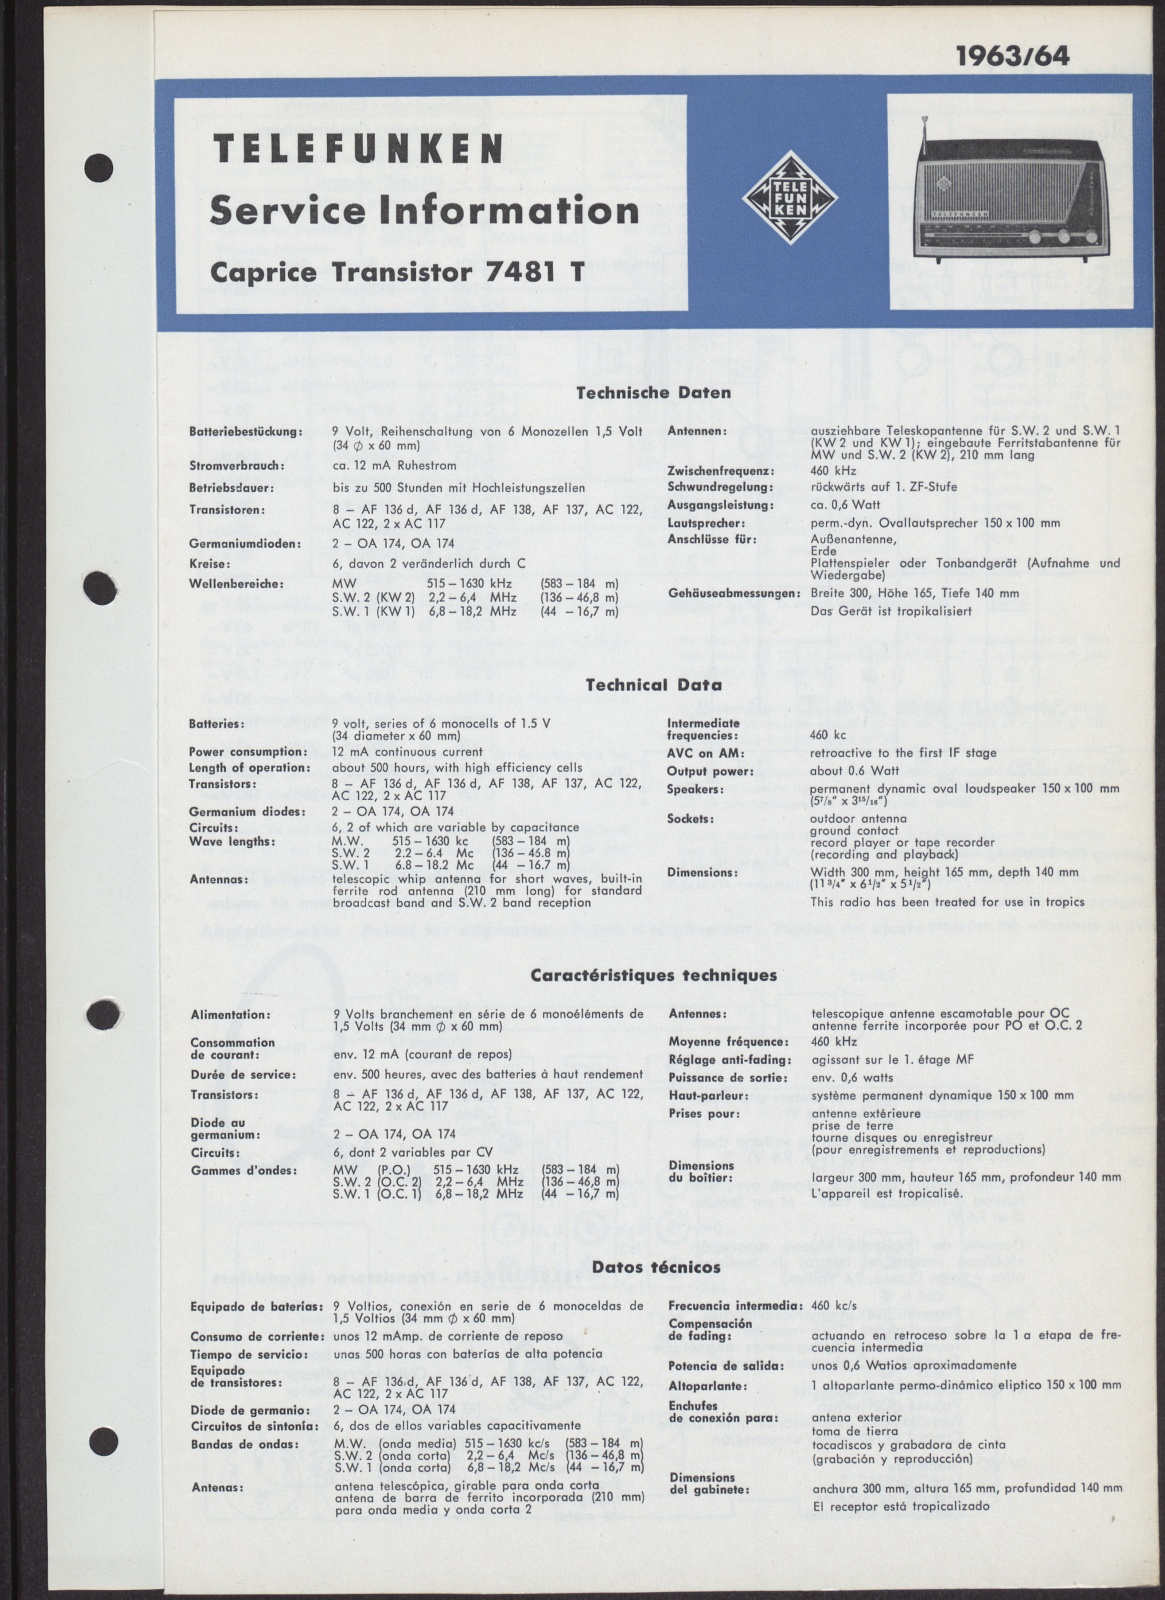 Bedienungsanleitung: Telefunken Service Information Caprice Transistor 7481 T (Stiftung Deutsches Technikmuseum Berlin CC0)